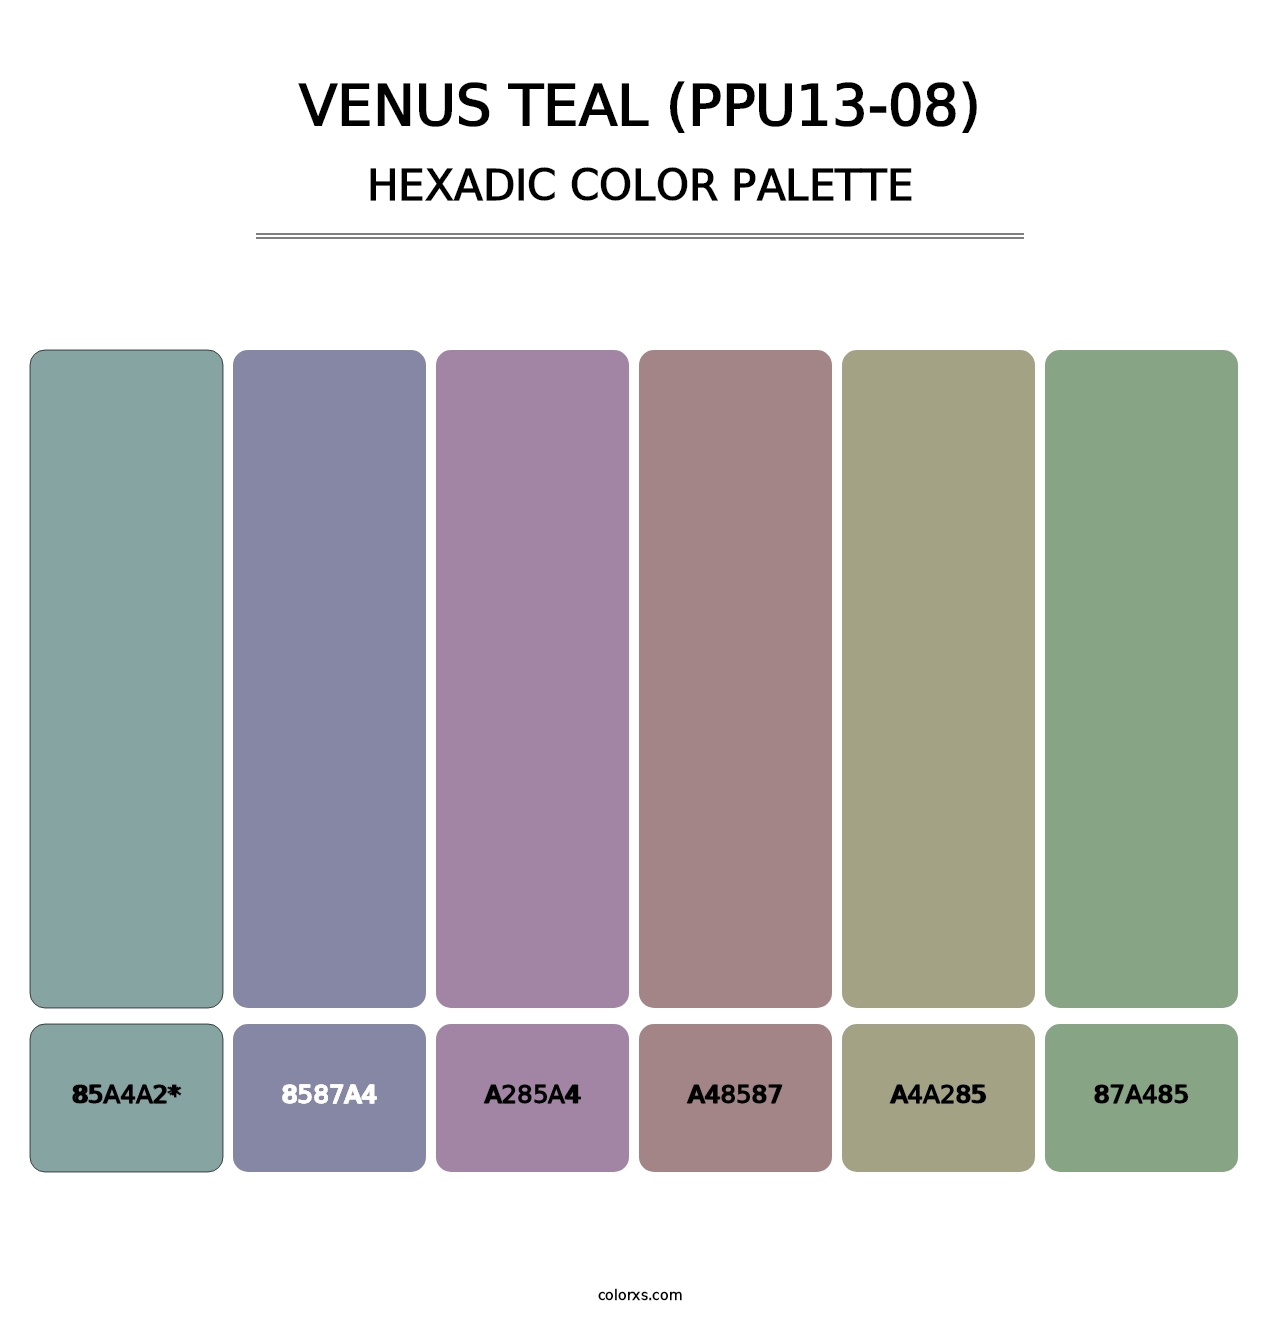 Venus Teal (PPU13-08) - Hexadic Color Palette